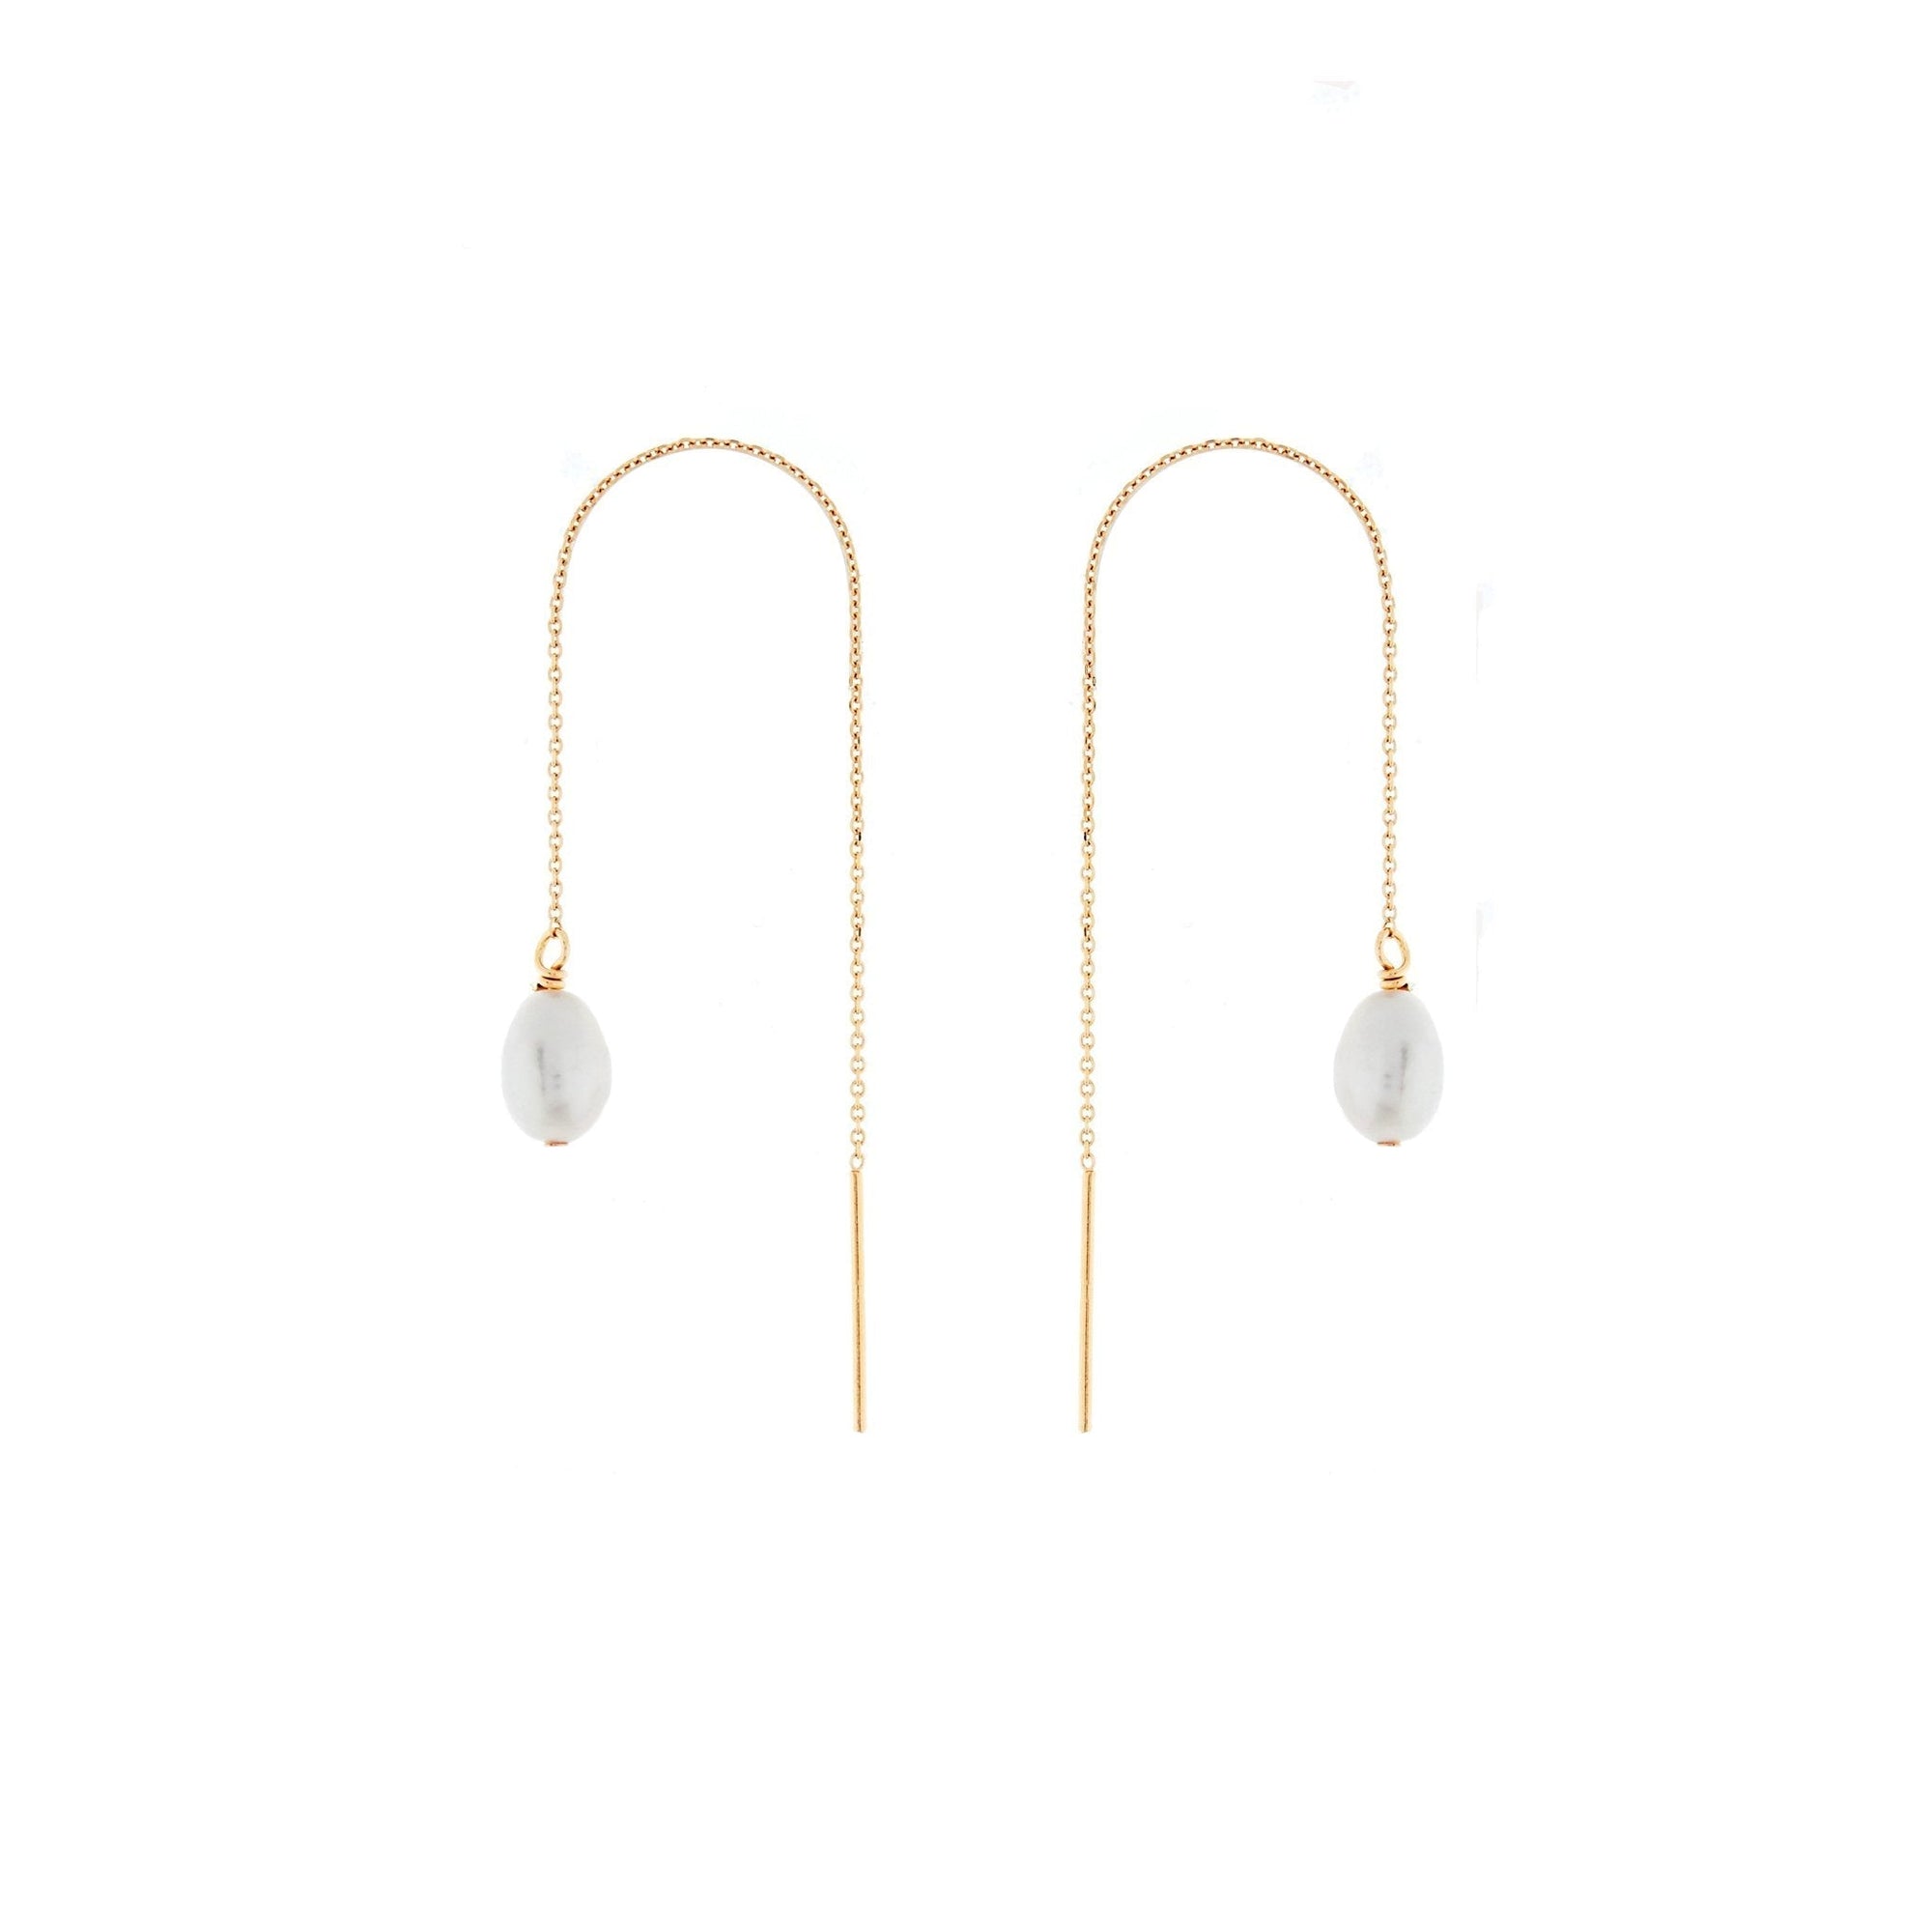 Duo Jewellery Earrings Duo thread pearl earrings